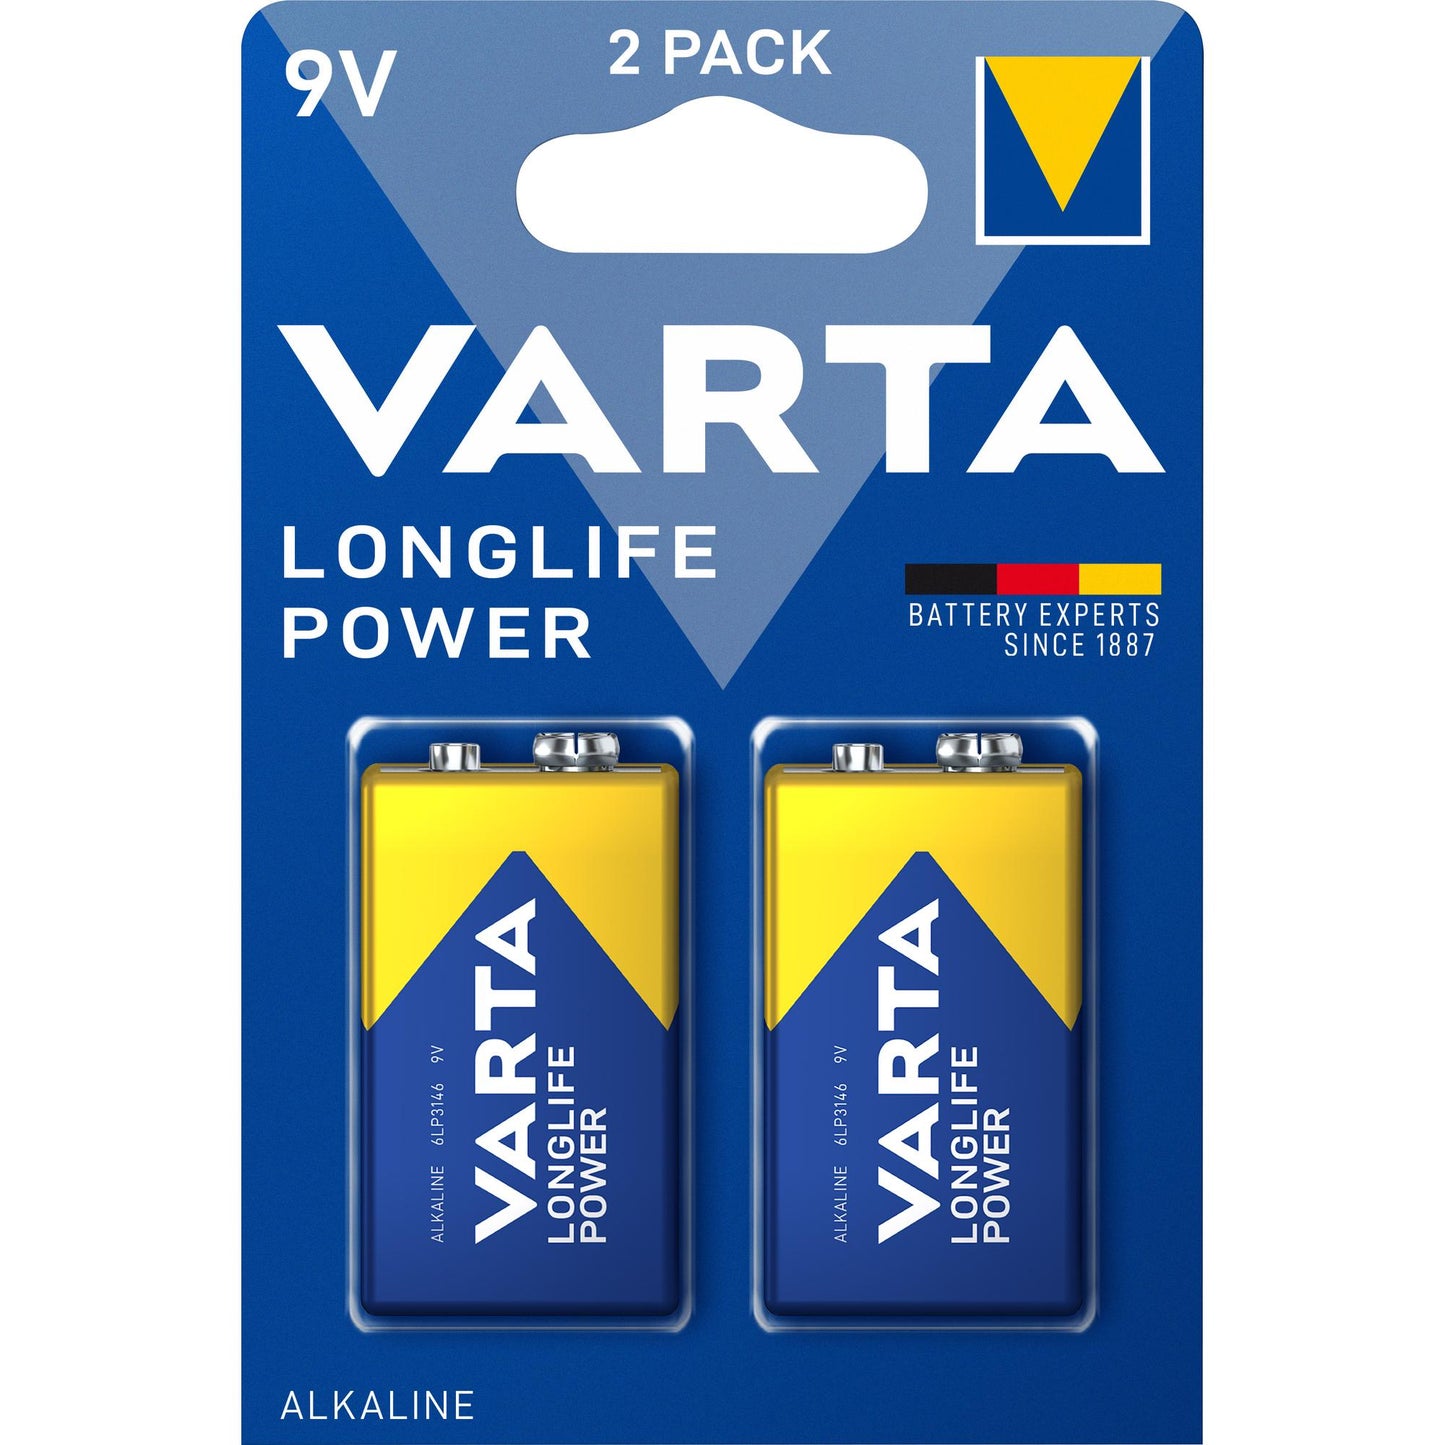 VARTA Batterie Alkaline E-Block 6LR61, 9V Longlife Power, Retail Blister (2-Pack)